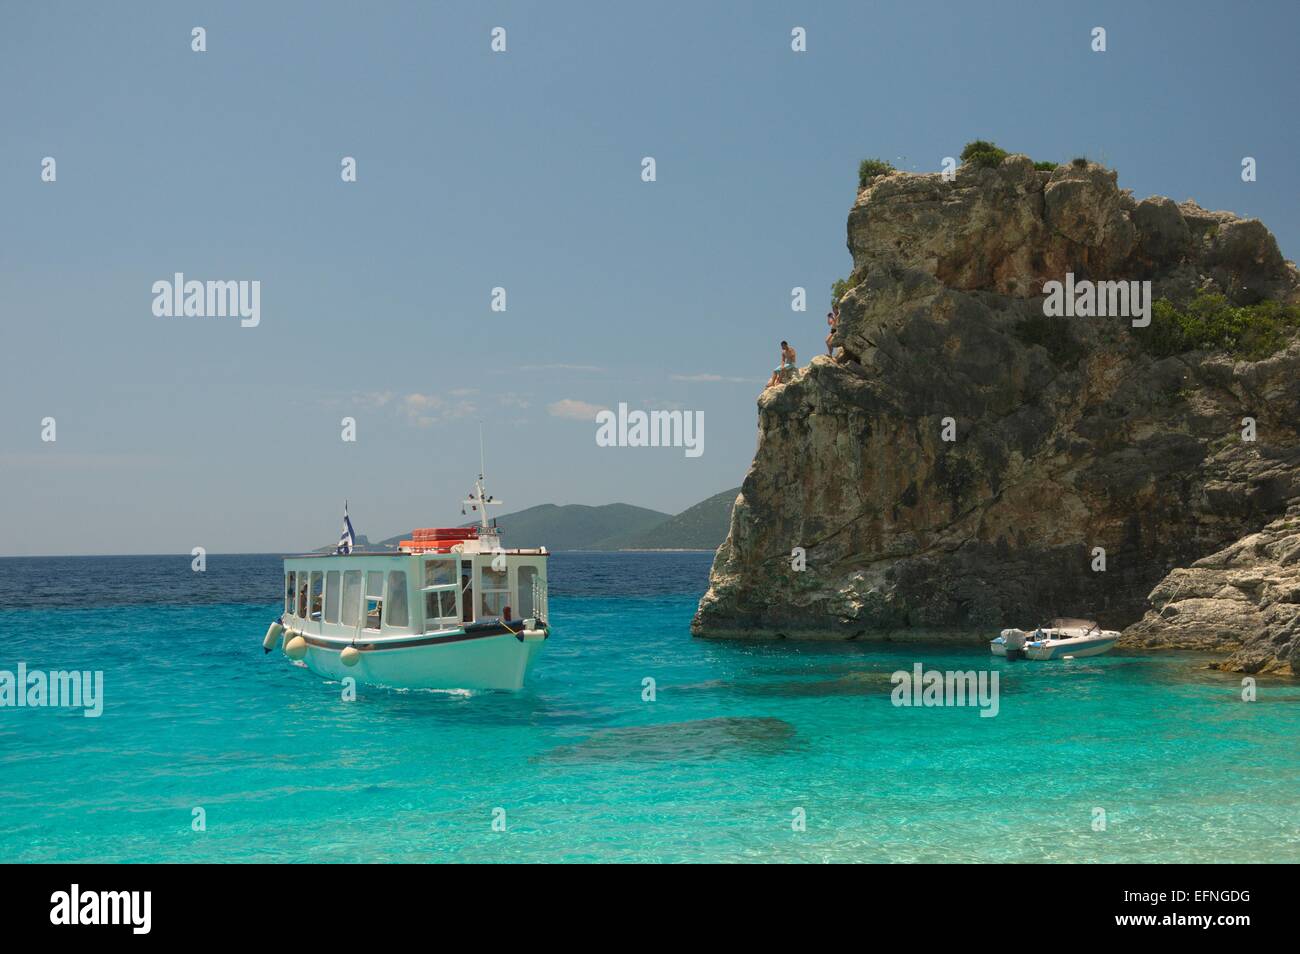 Taxi barca si avvicina Agiofili Beach sull'isola greca di Lefkada, di lasciare e prendere i passeggeri. Foto Stock